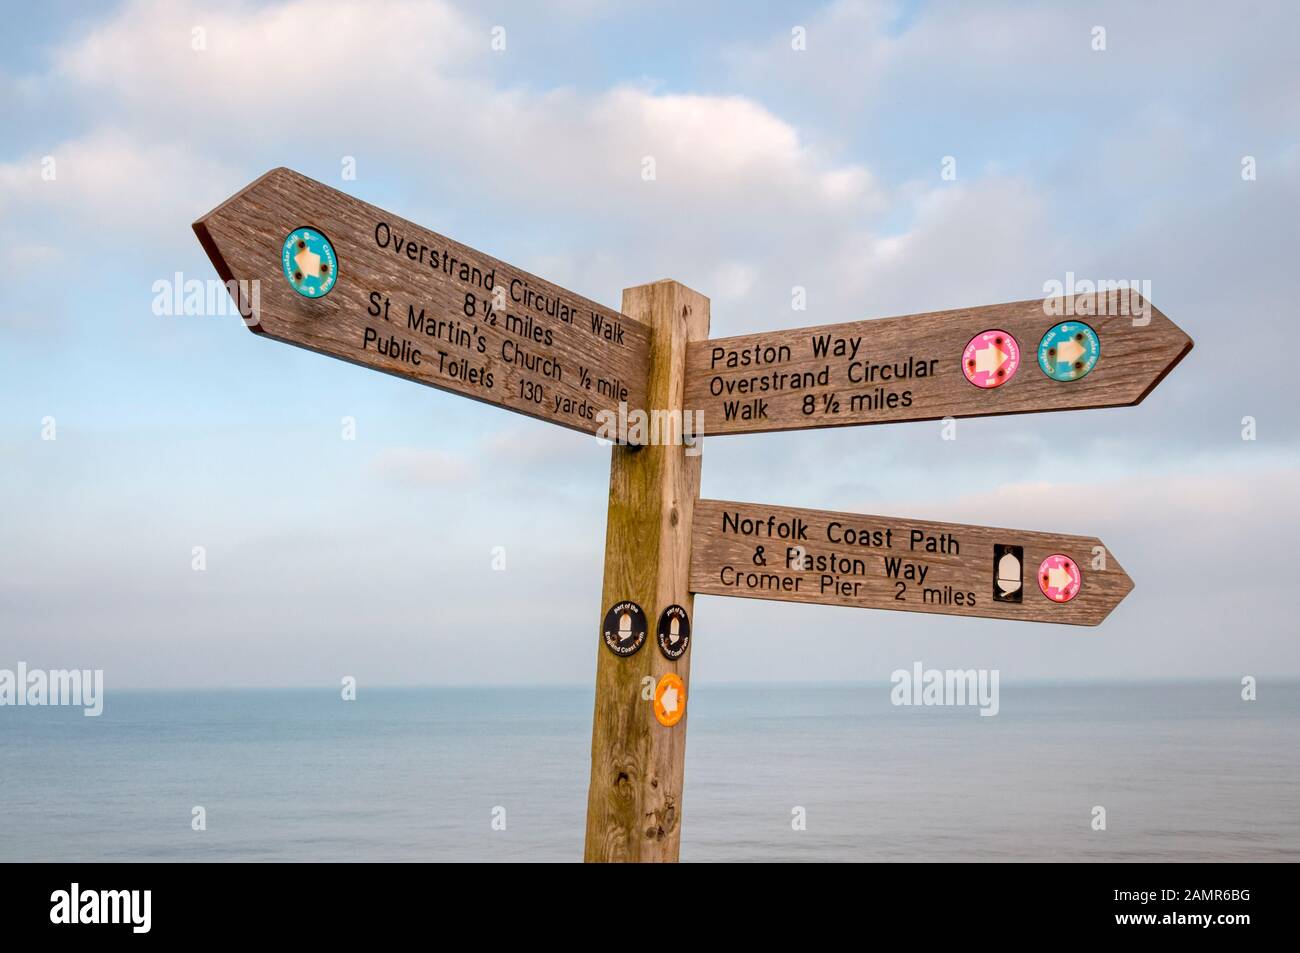 Wegzeichen und Wegweiser für den Overstrand Circular Walk, Norfolk Coast Path & Paston Way in Norfolk. Stockfoto